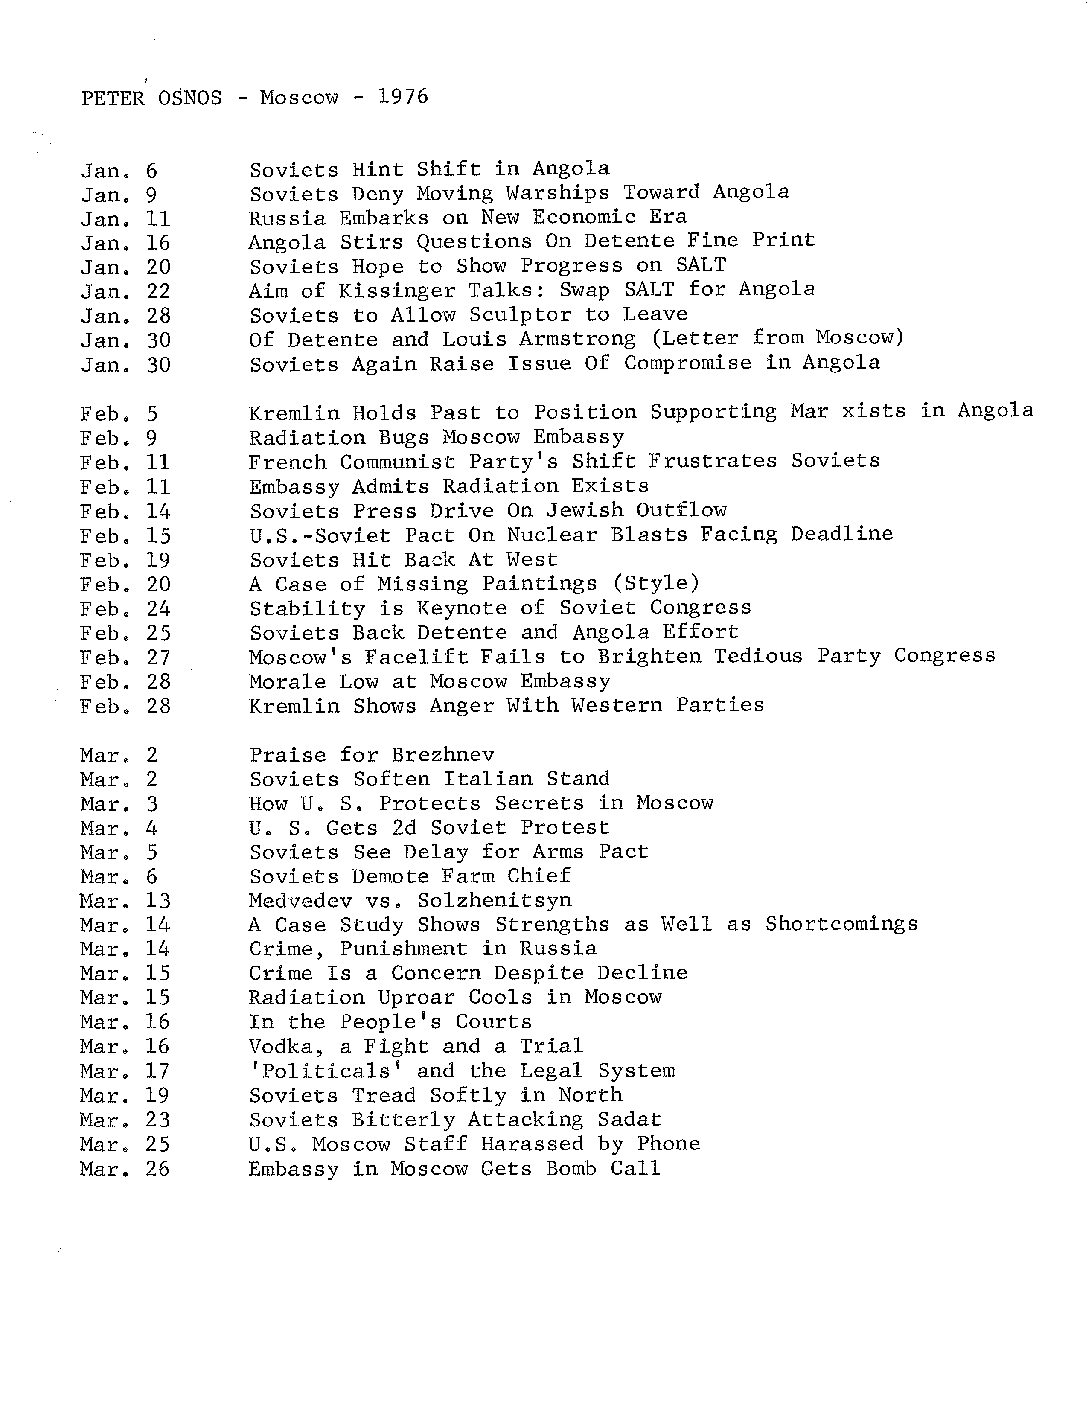 List of stories written in 1976.